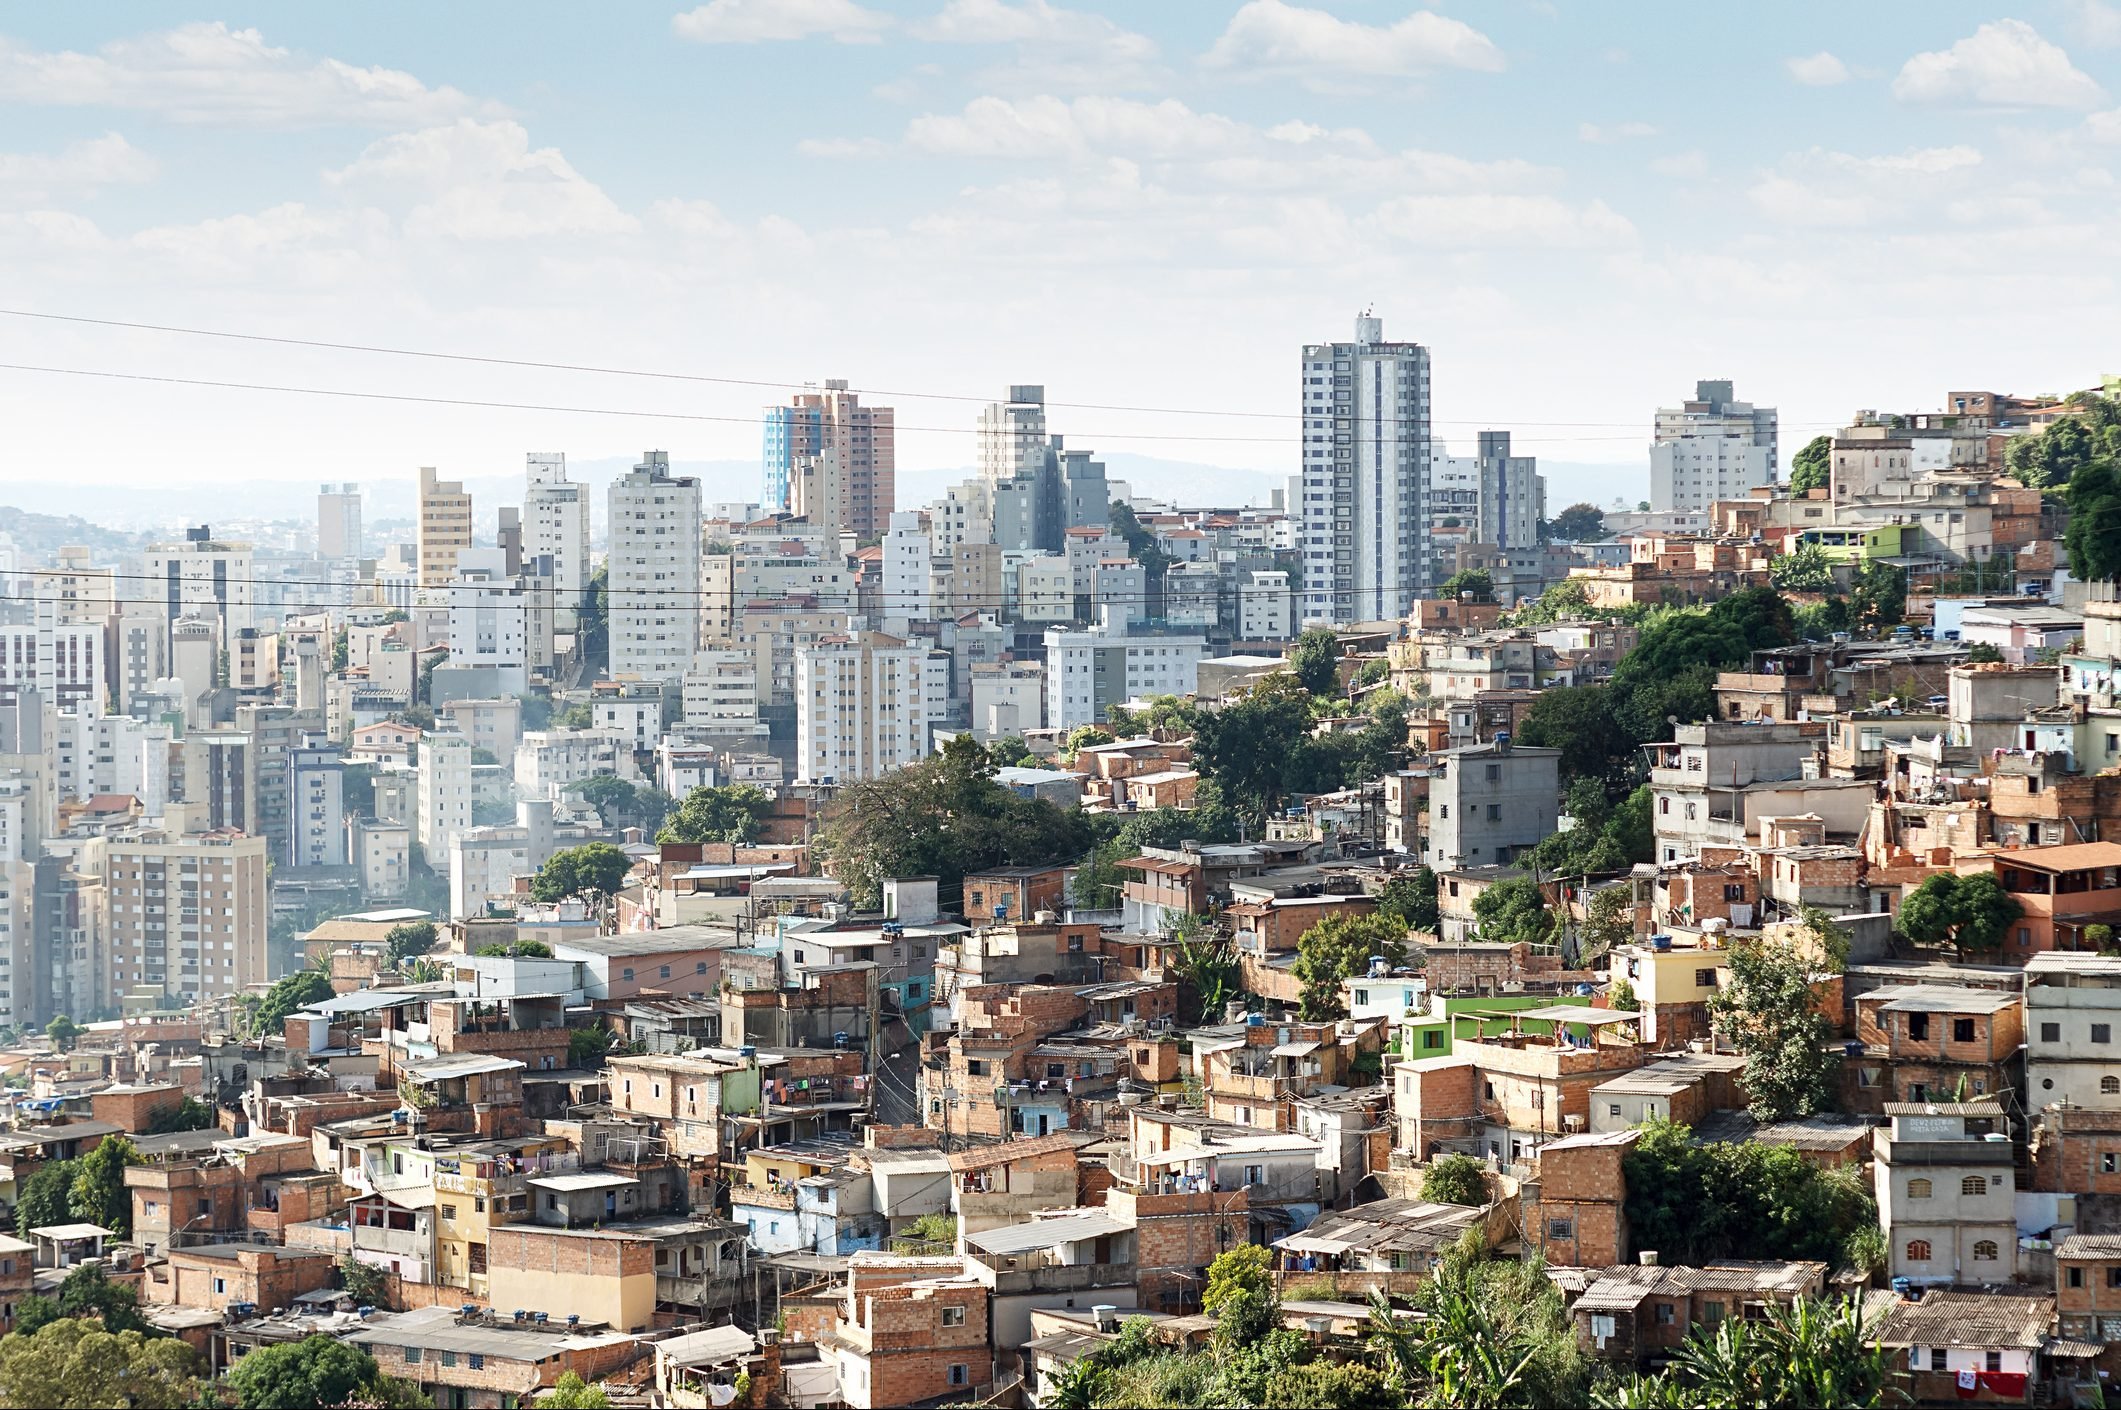 5 bilionários têm mesmo que 50% mais pobre no Brasil, diz Oxfam ...